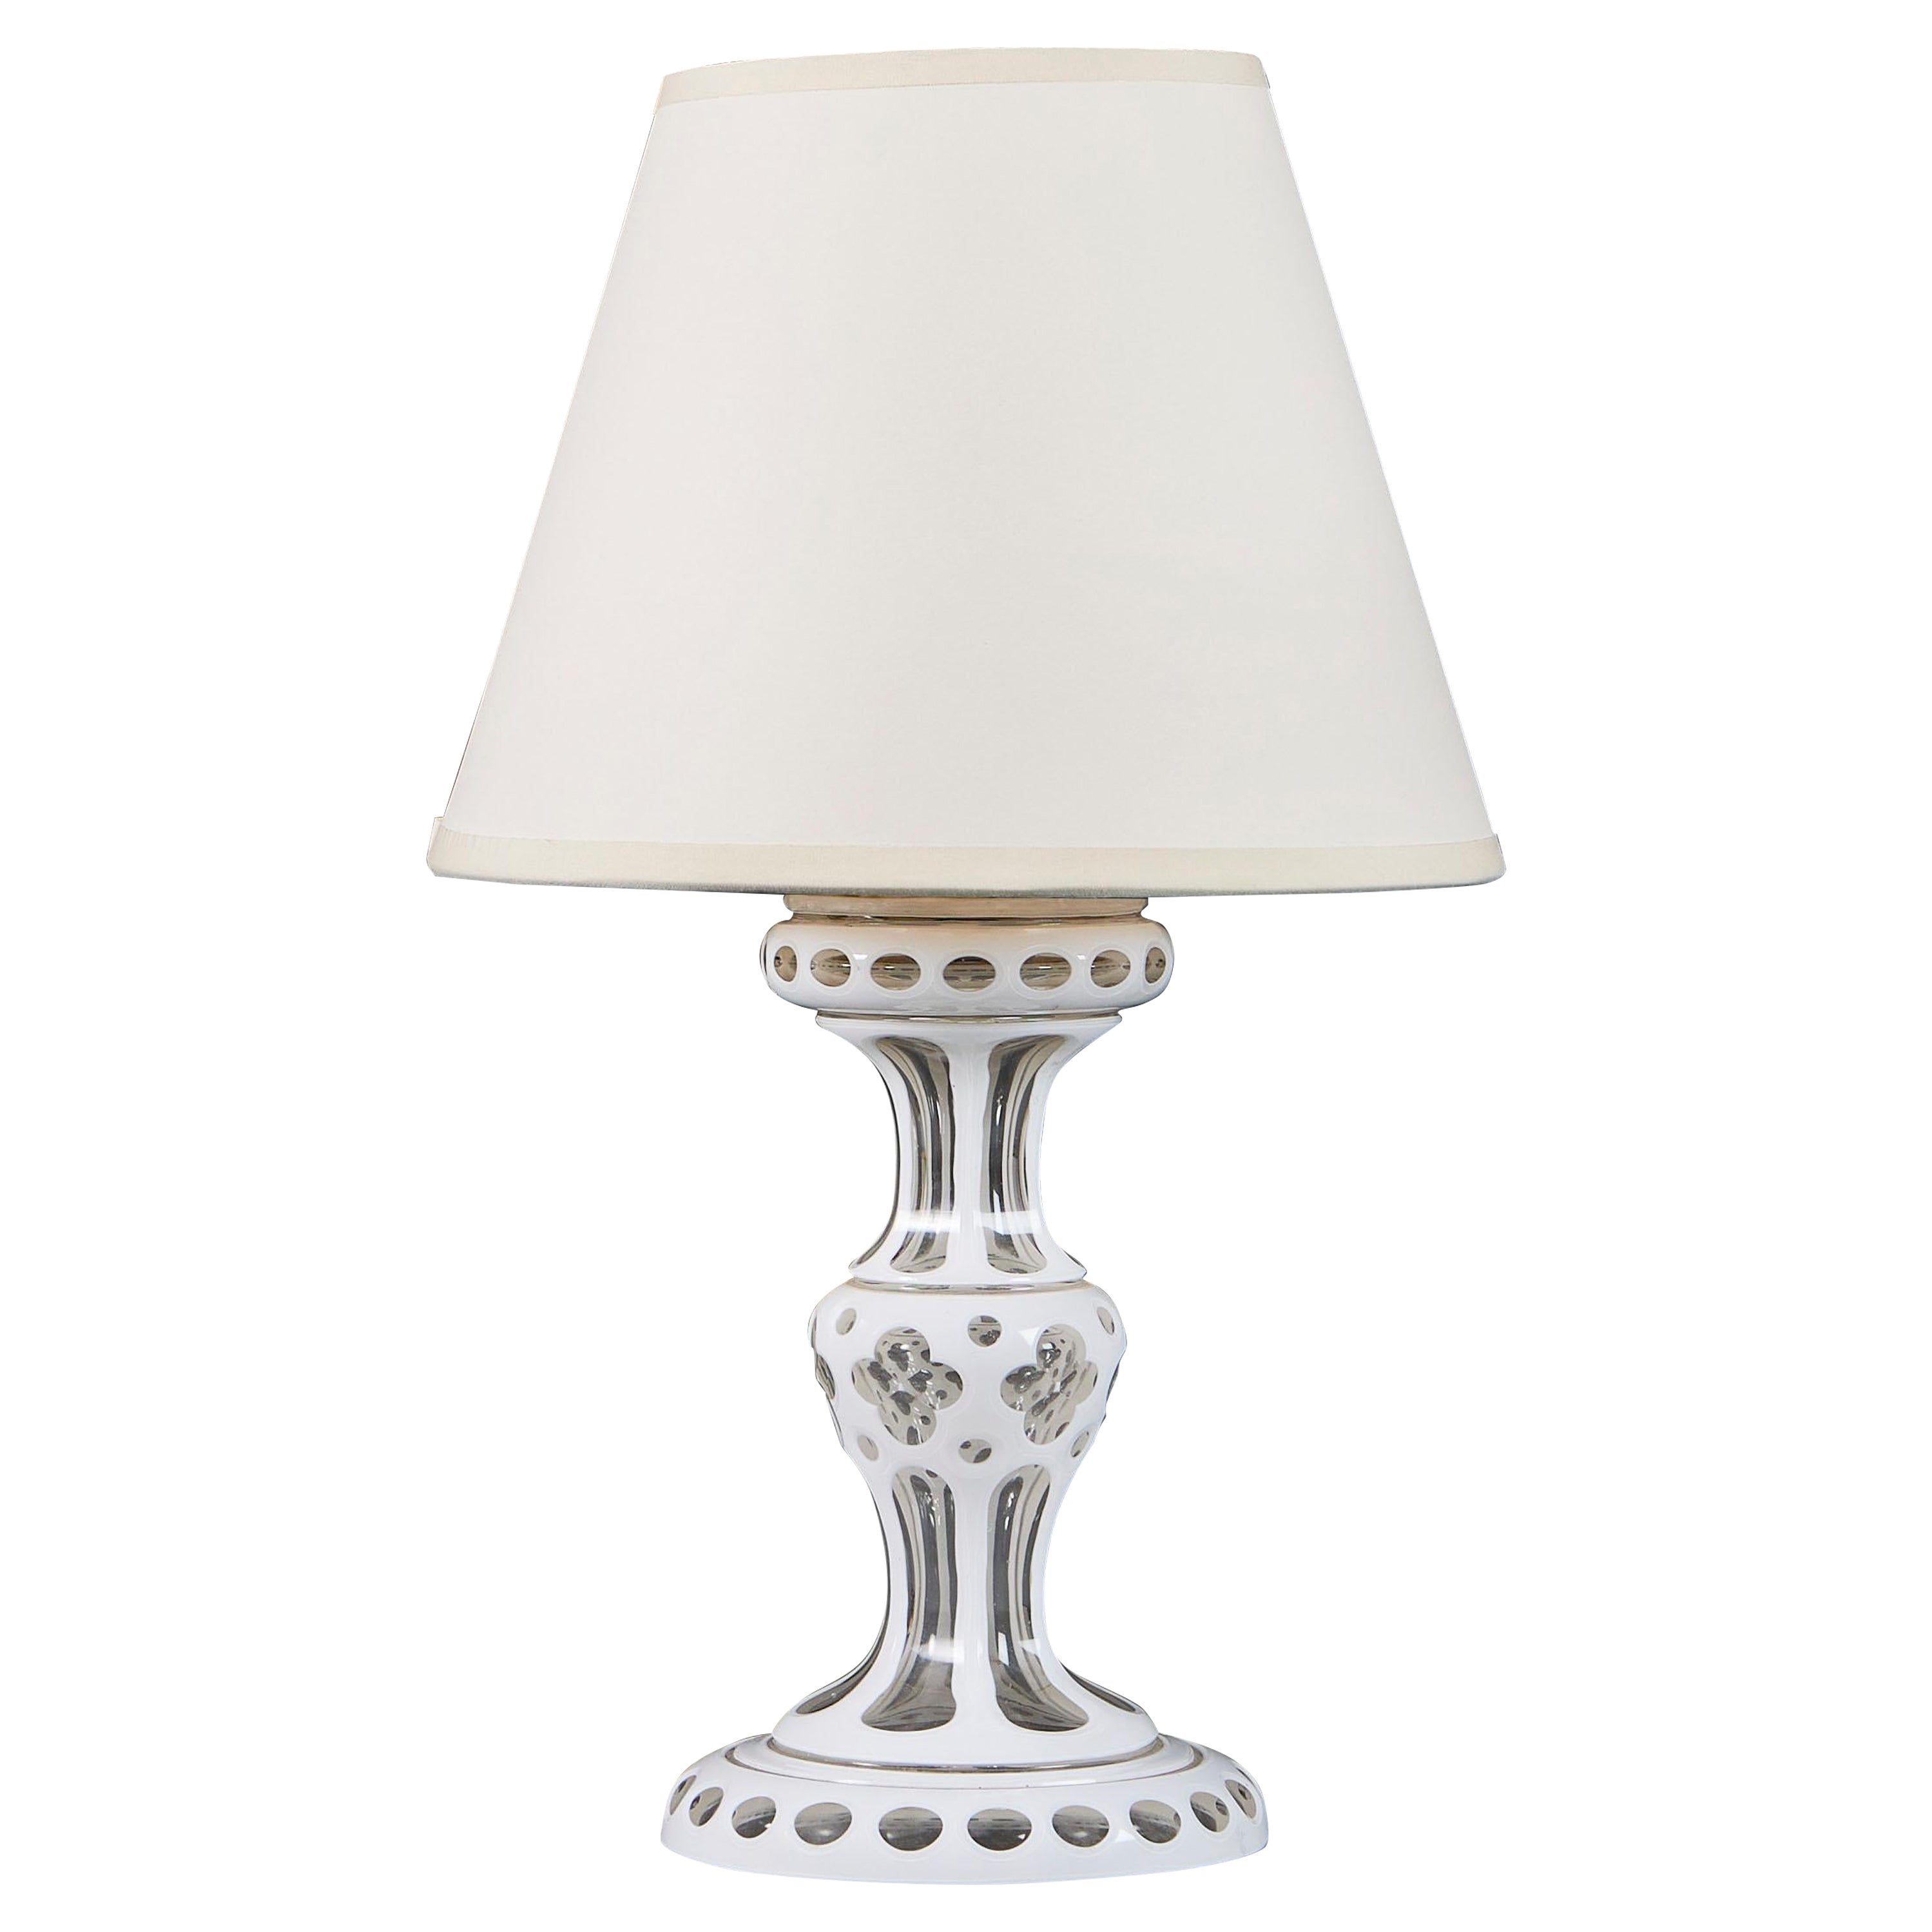 Petite lampe de table en verre blanc taillé du 19e siècle